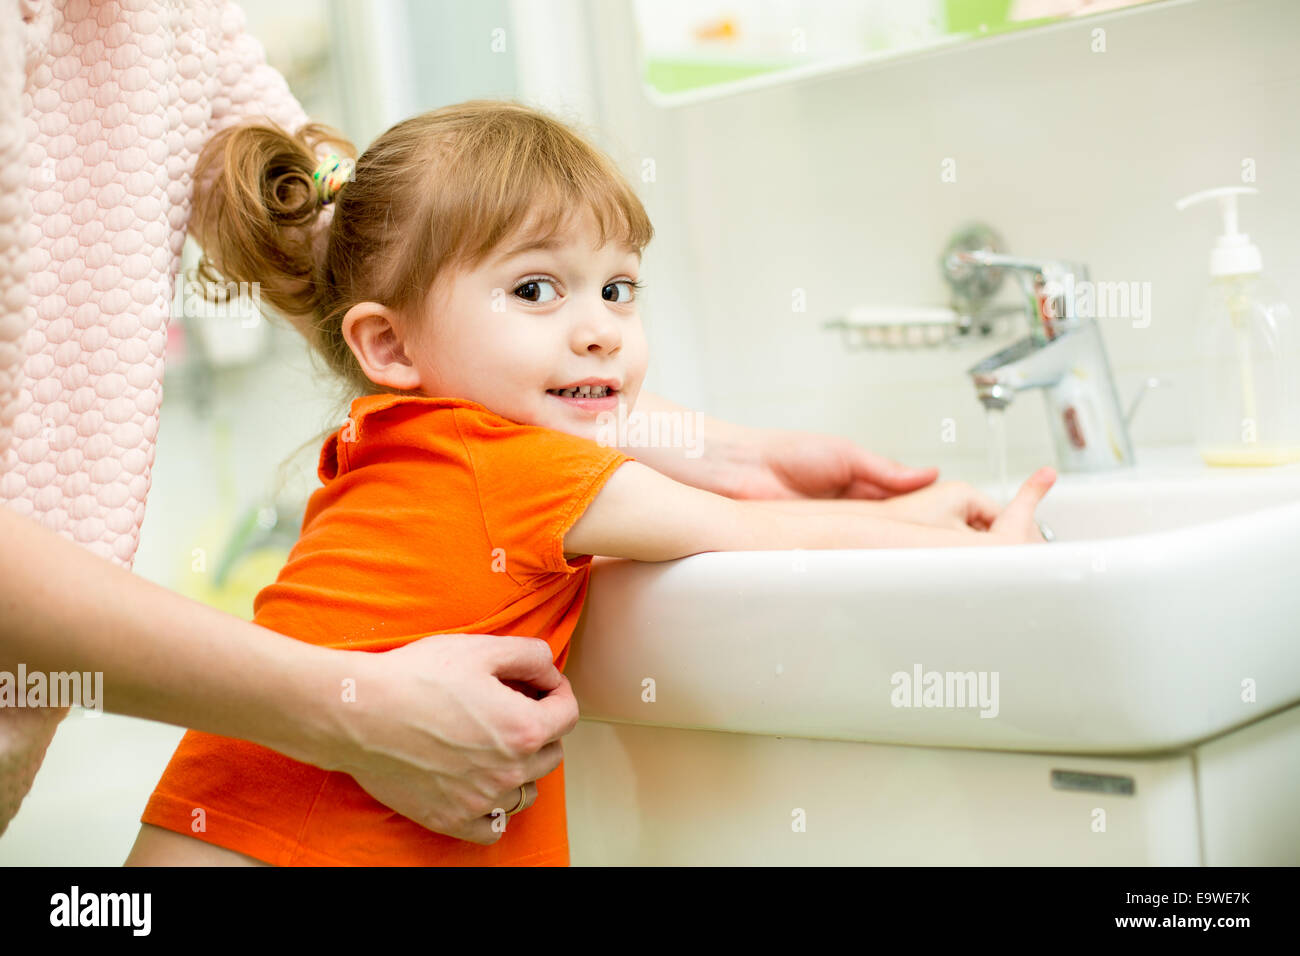 Kid girl lavaggio delle mani con mom help Foto Stock